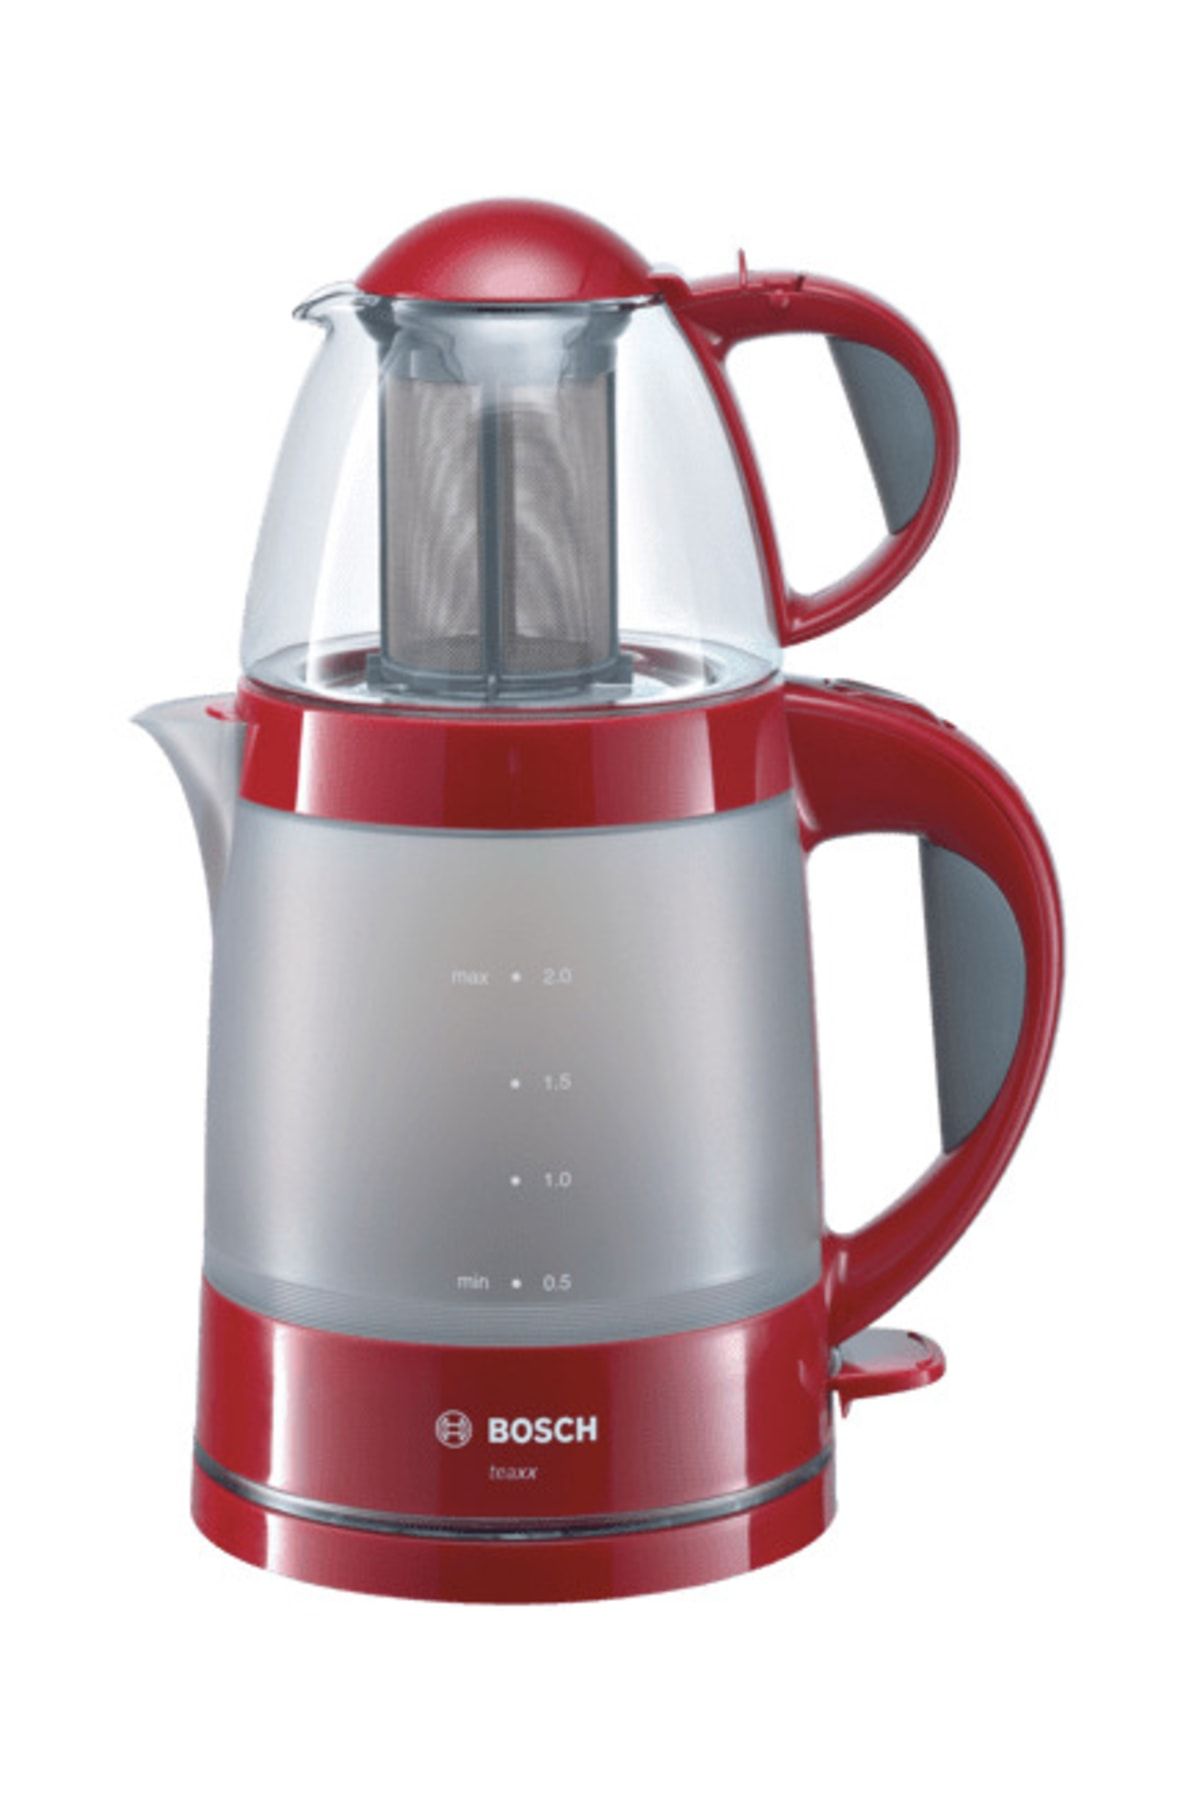 Bosch Tta2010 Çay & Kahve Makinesi